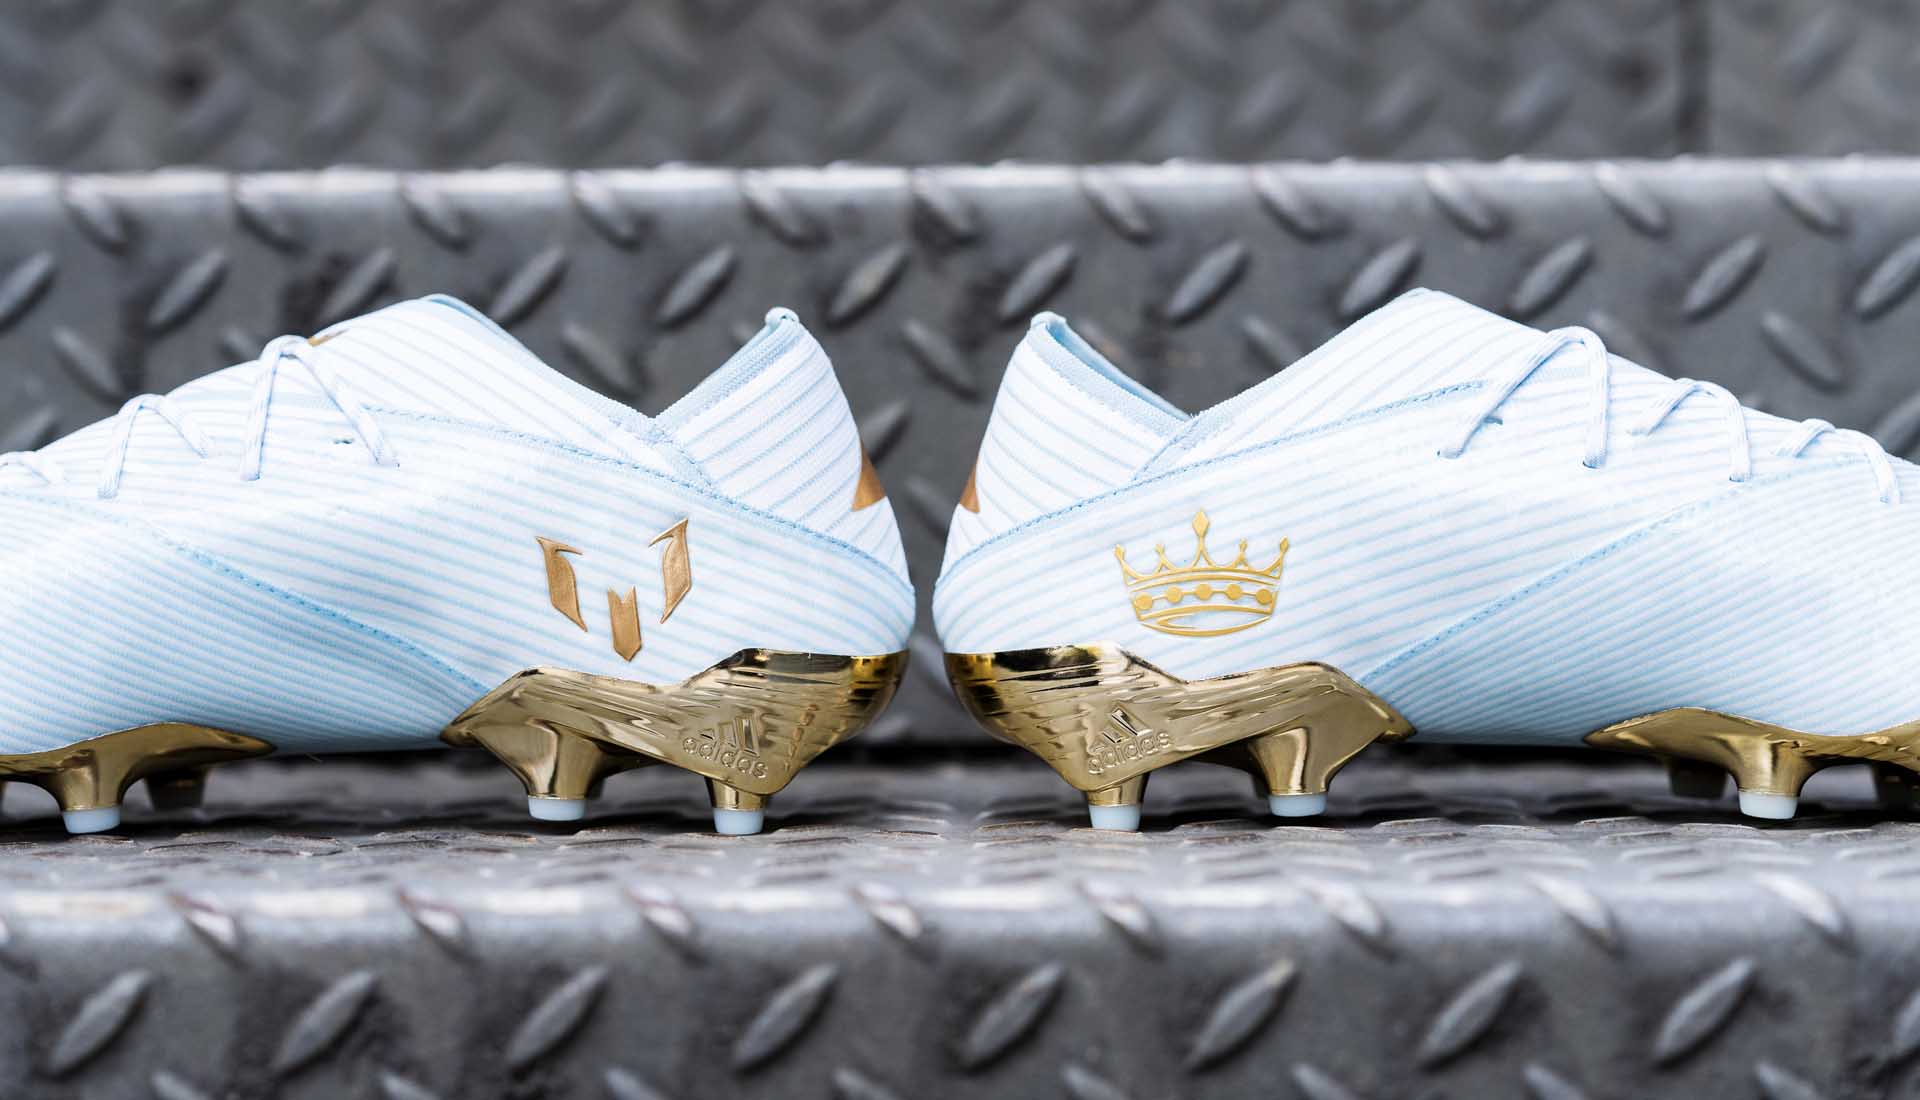 Trên giày có in logo cách điệu chữ M của Messi cùng với chiếc vương miện màu vàng Gold